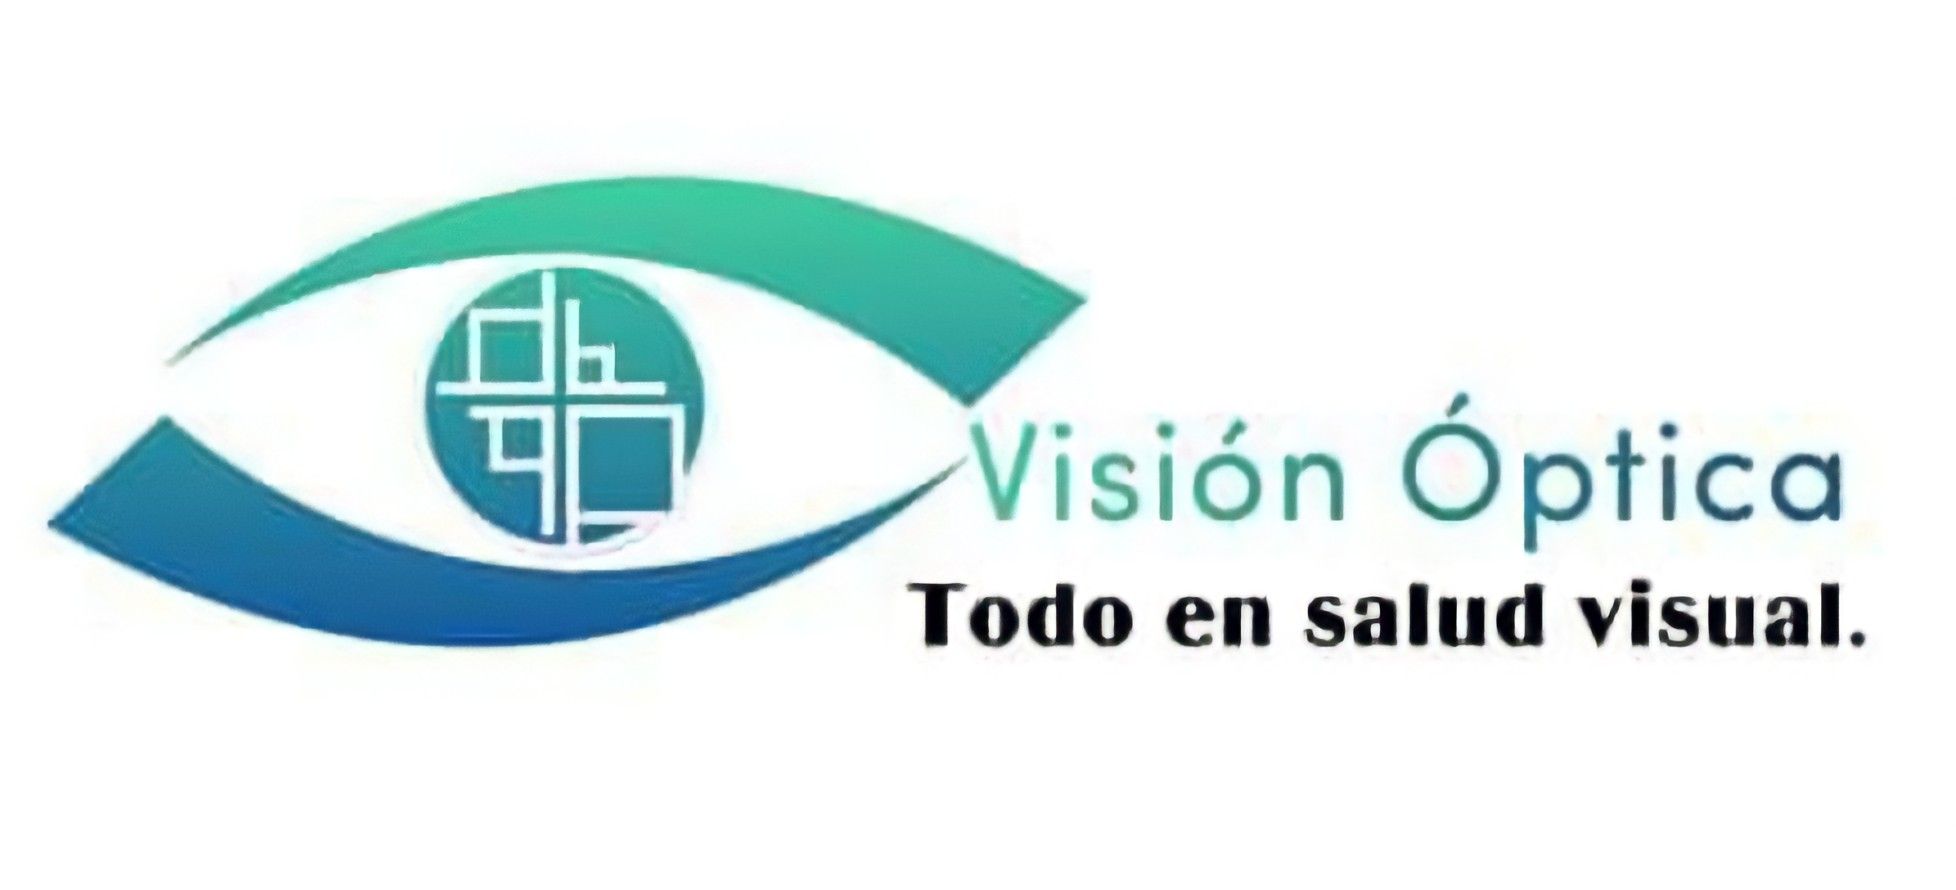 Vision optica 